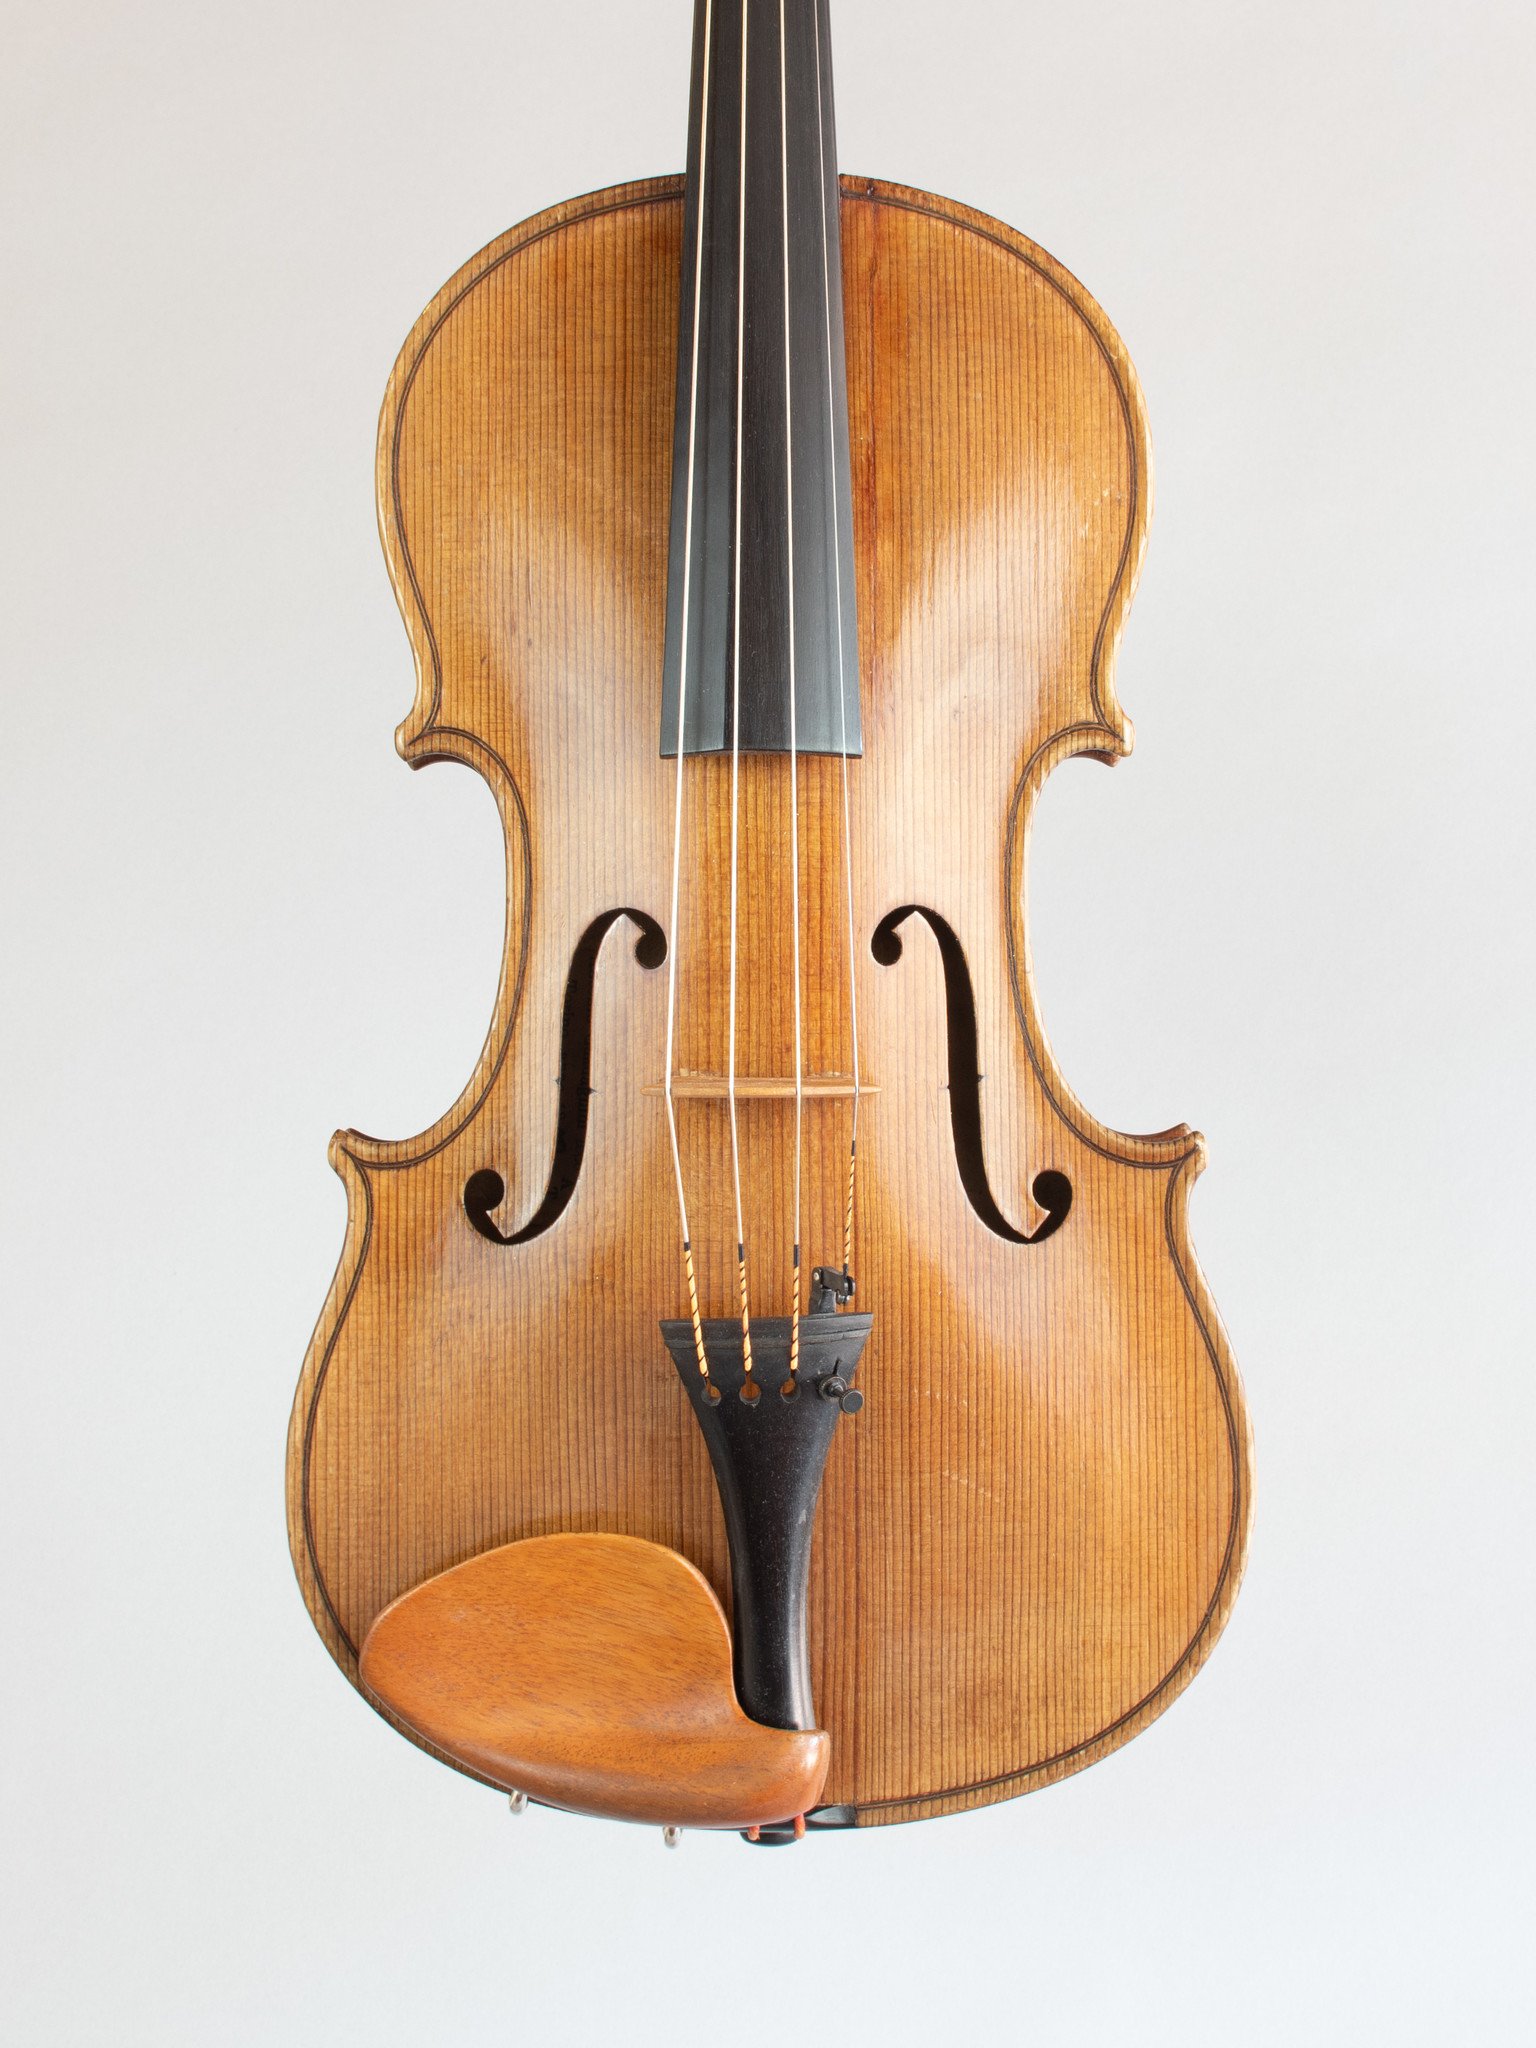 Antonio Guadagnini 1859 label 15 3/4" European viola